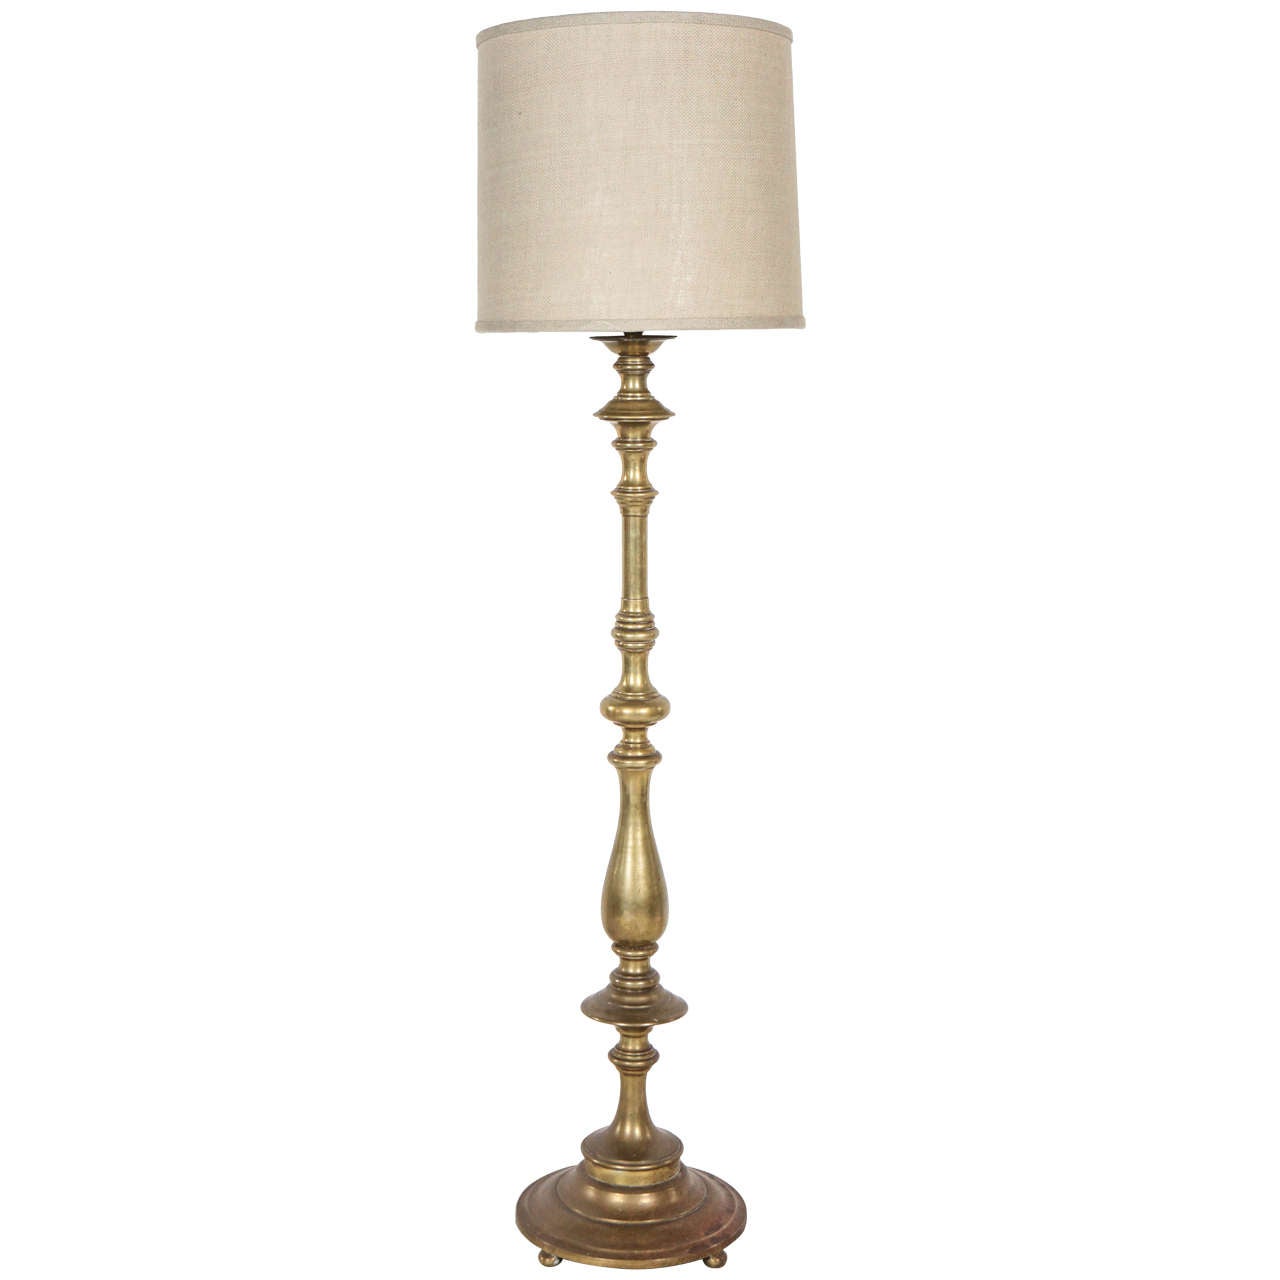 Vintage Turned Brass Tall Floor Lamp